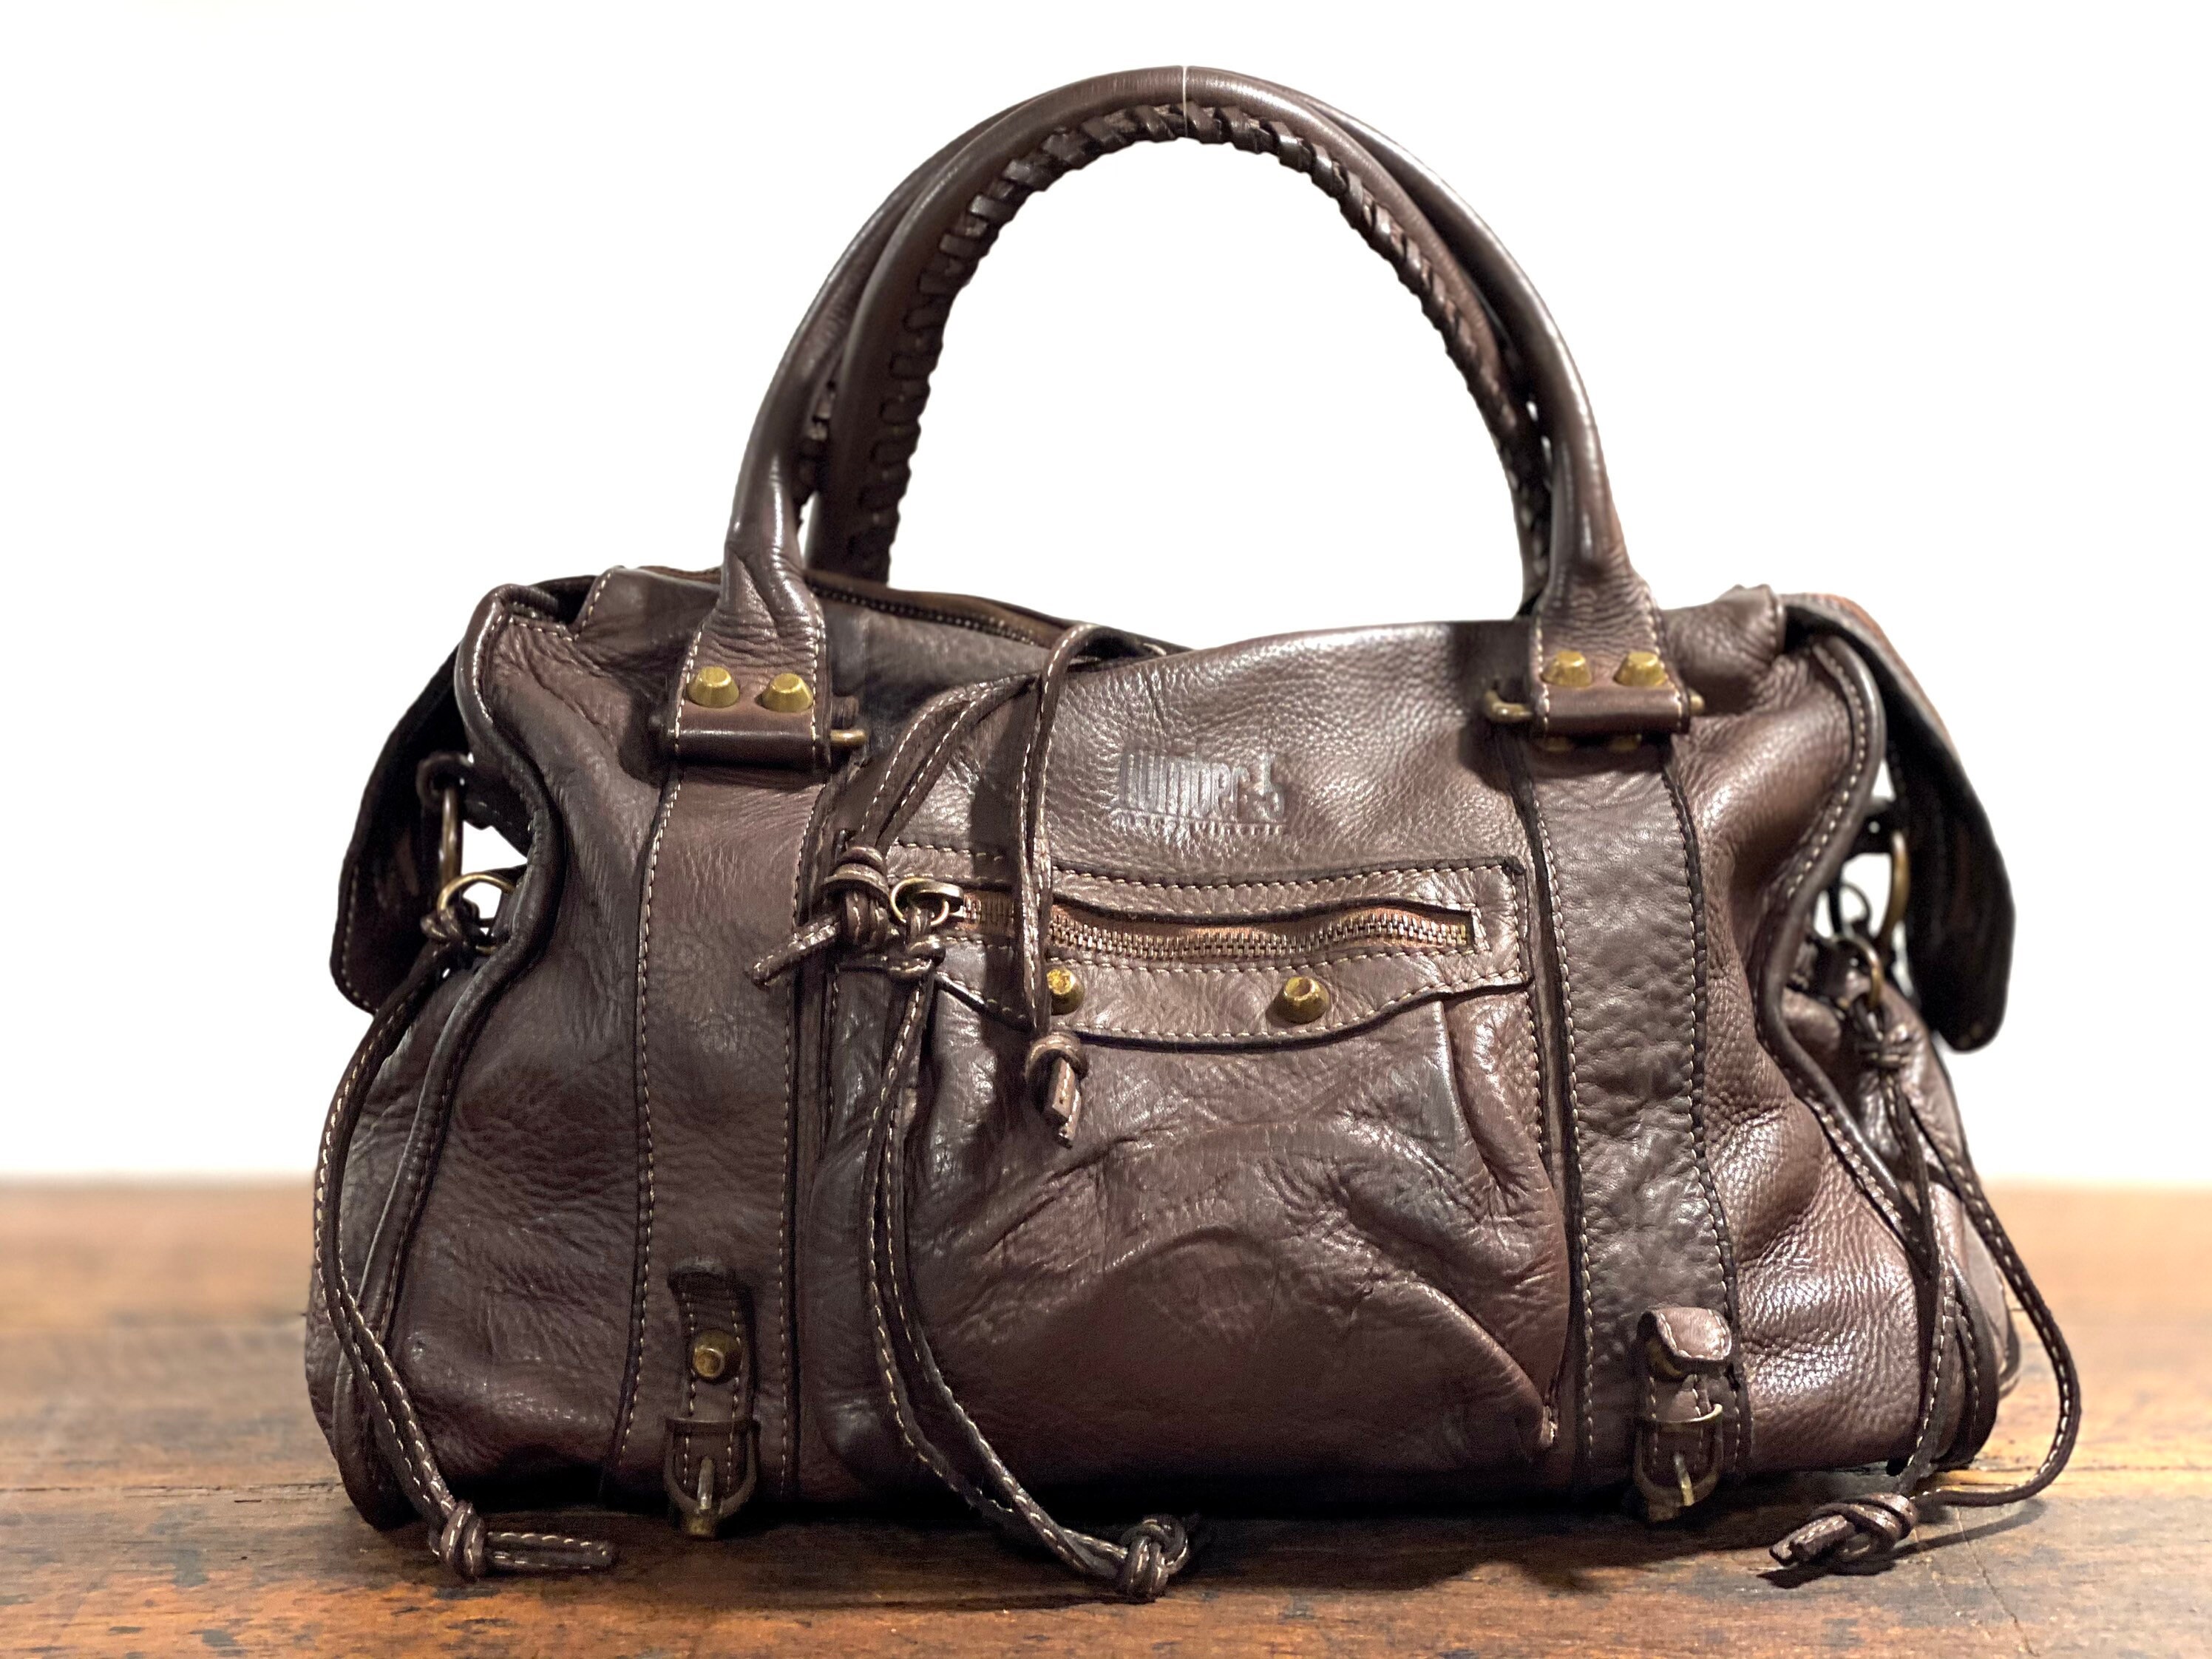 Soft leather bag very light veal leather handbag adorned | Etsy